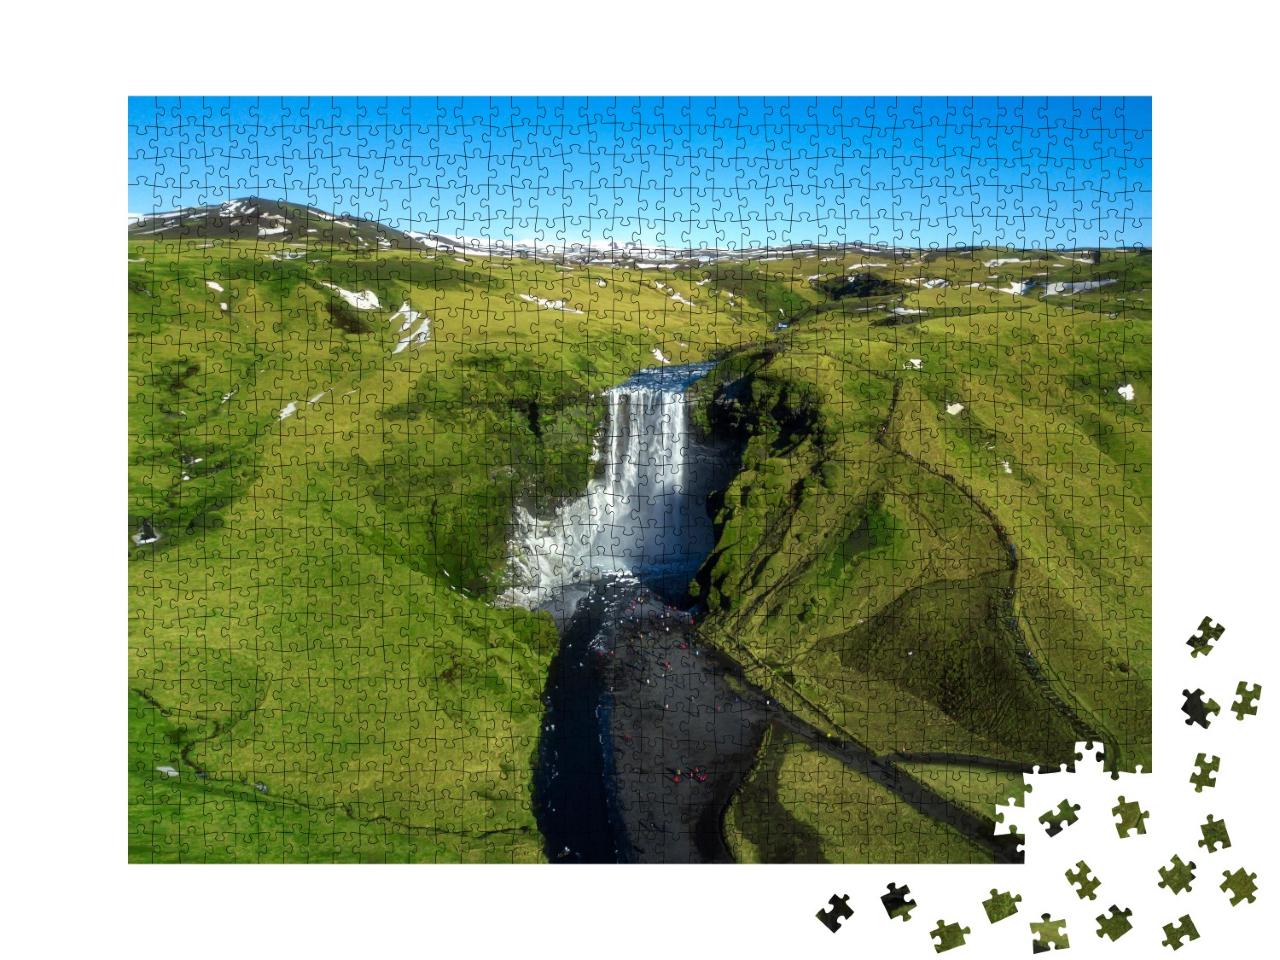 Puzzle de 1000 pièces « Célèbres chutes d'eau : Skogafoss au milieu de l'Islande, vue aérienne »